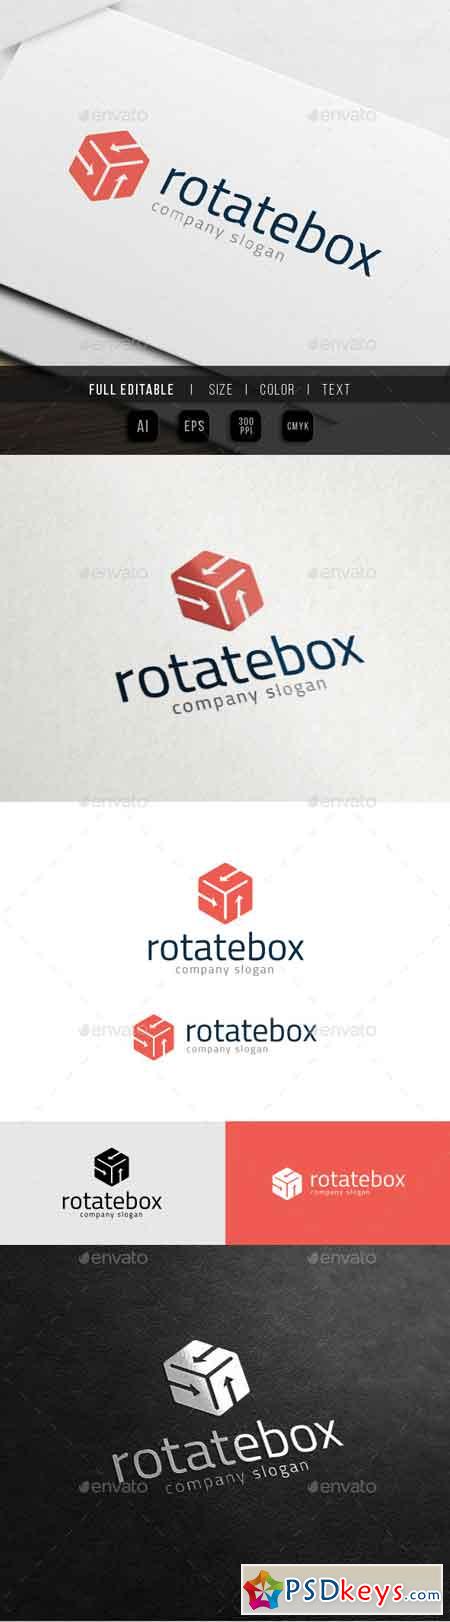 Rotate Box - Hexa Hosting 10988079